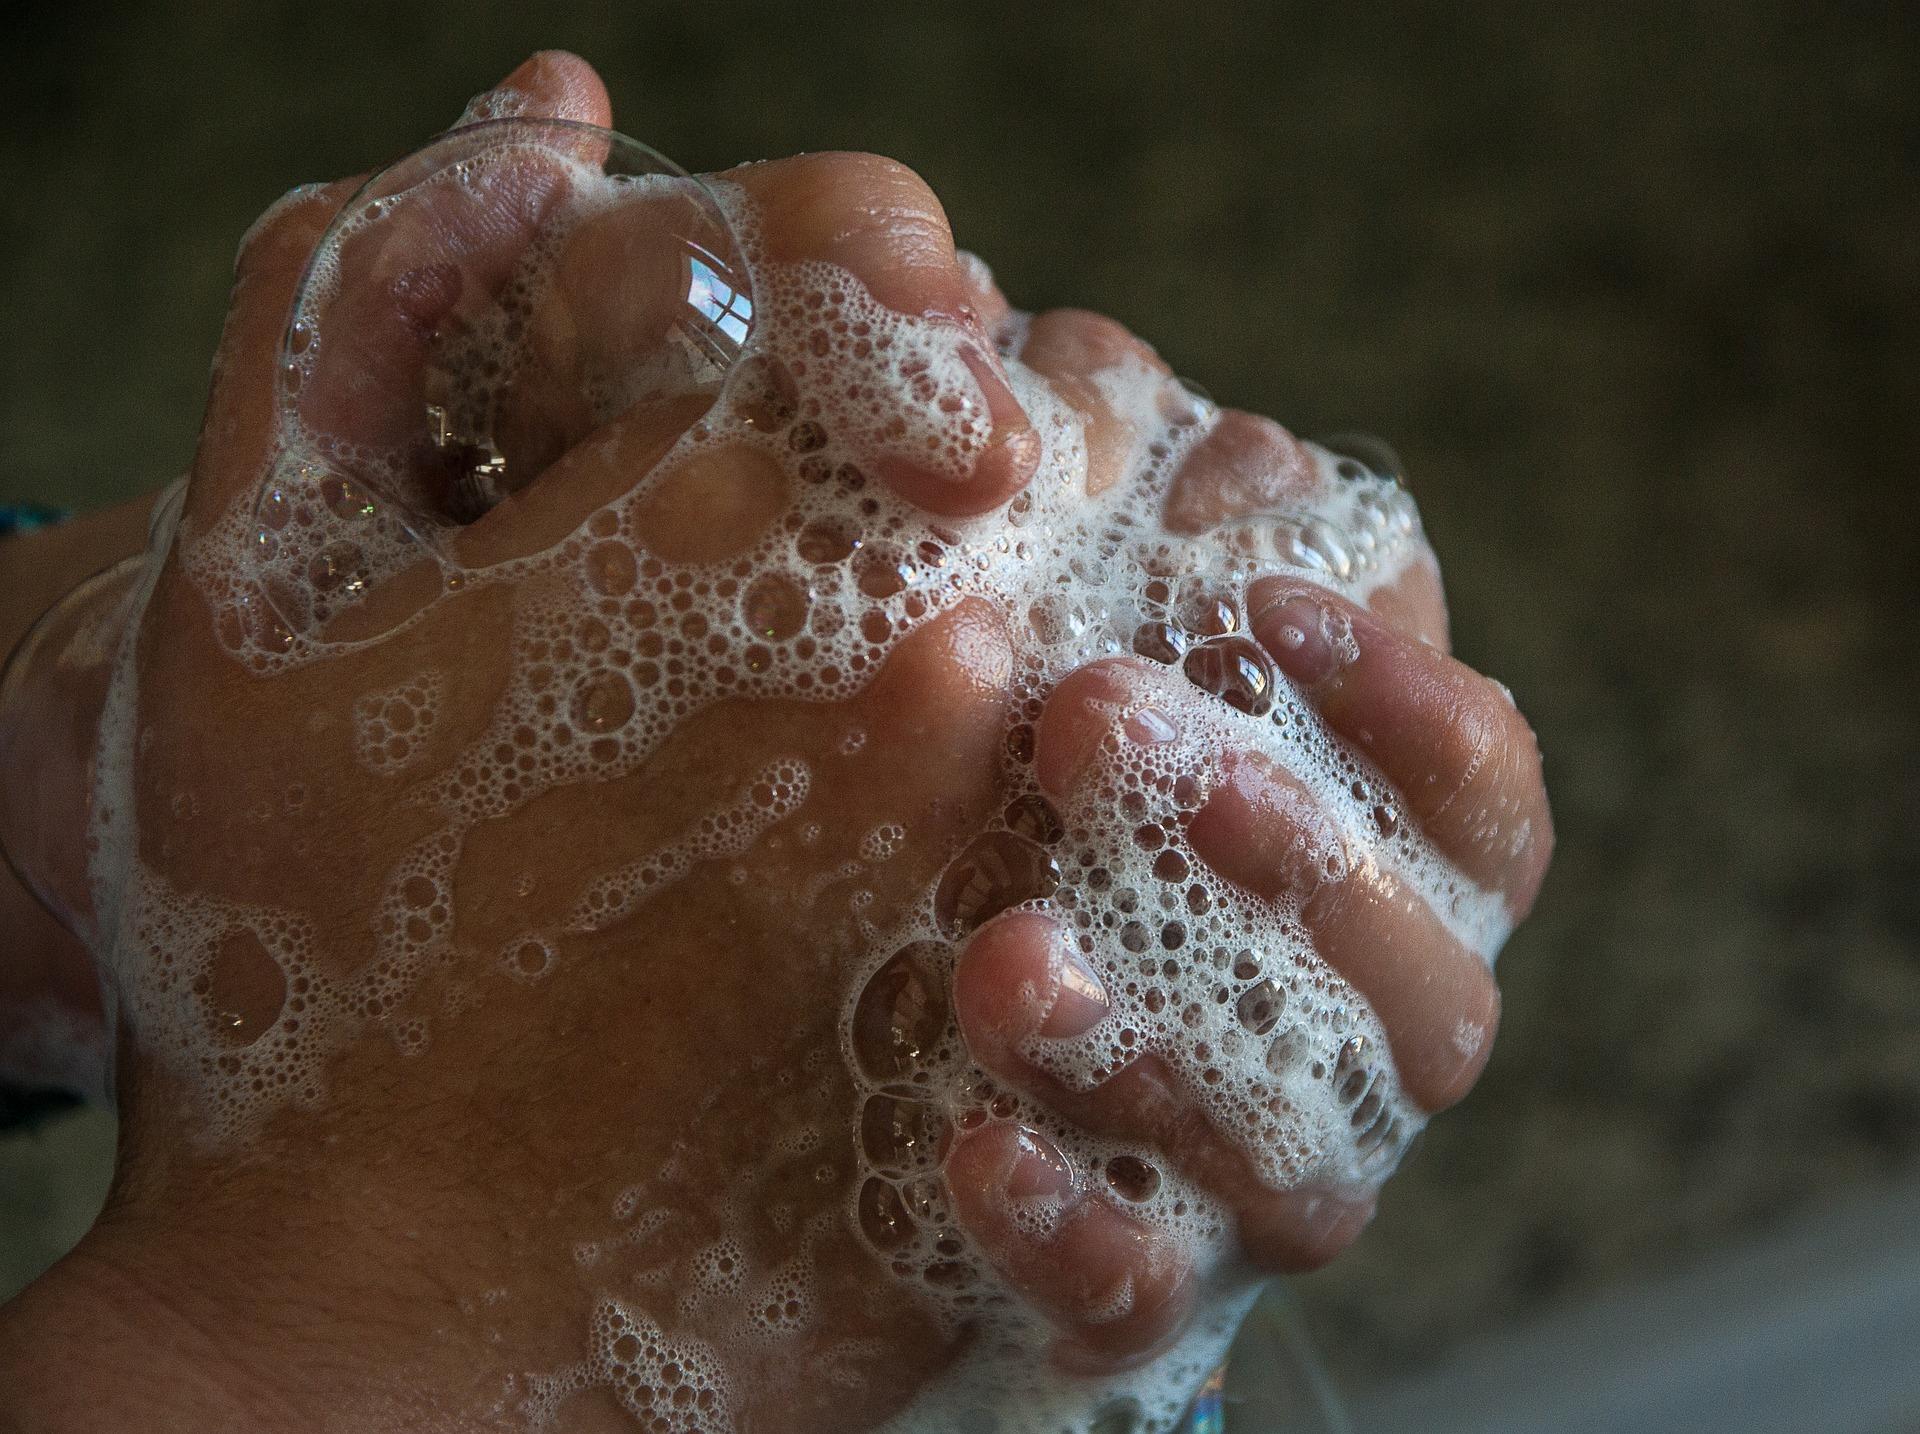 Estas desinfectando correctamente tus manos ?